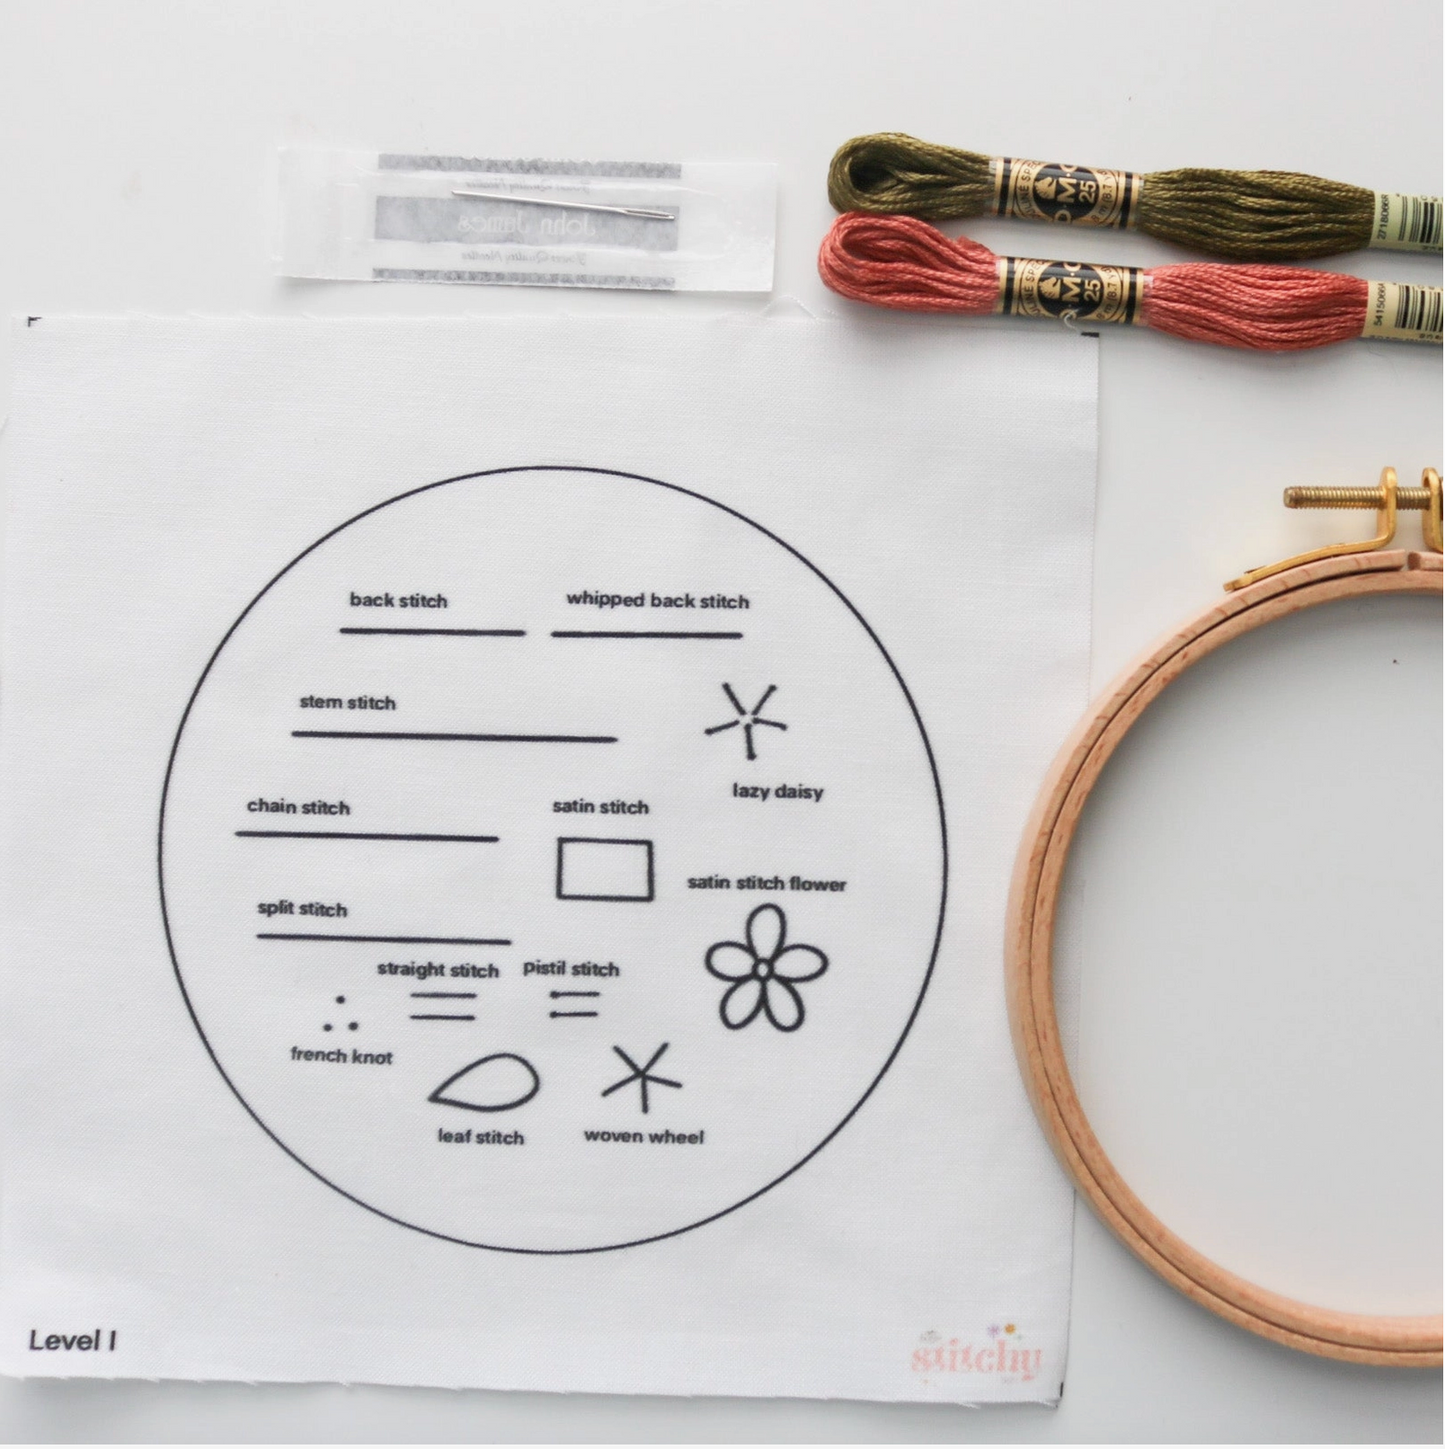 Level I - Stitch Sampler Beginner Embroidery Kit